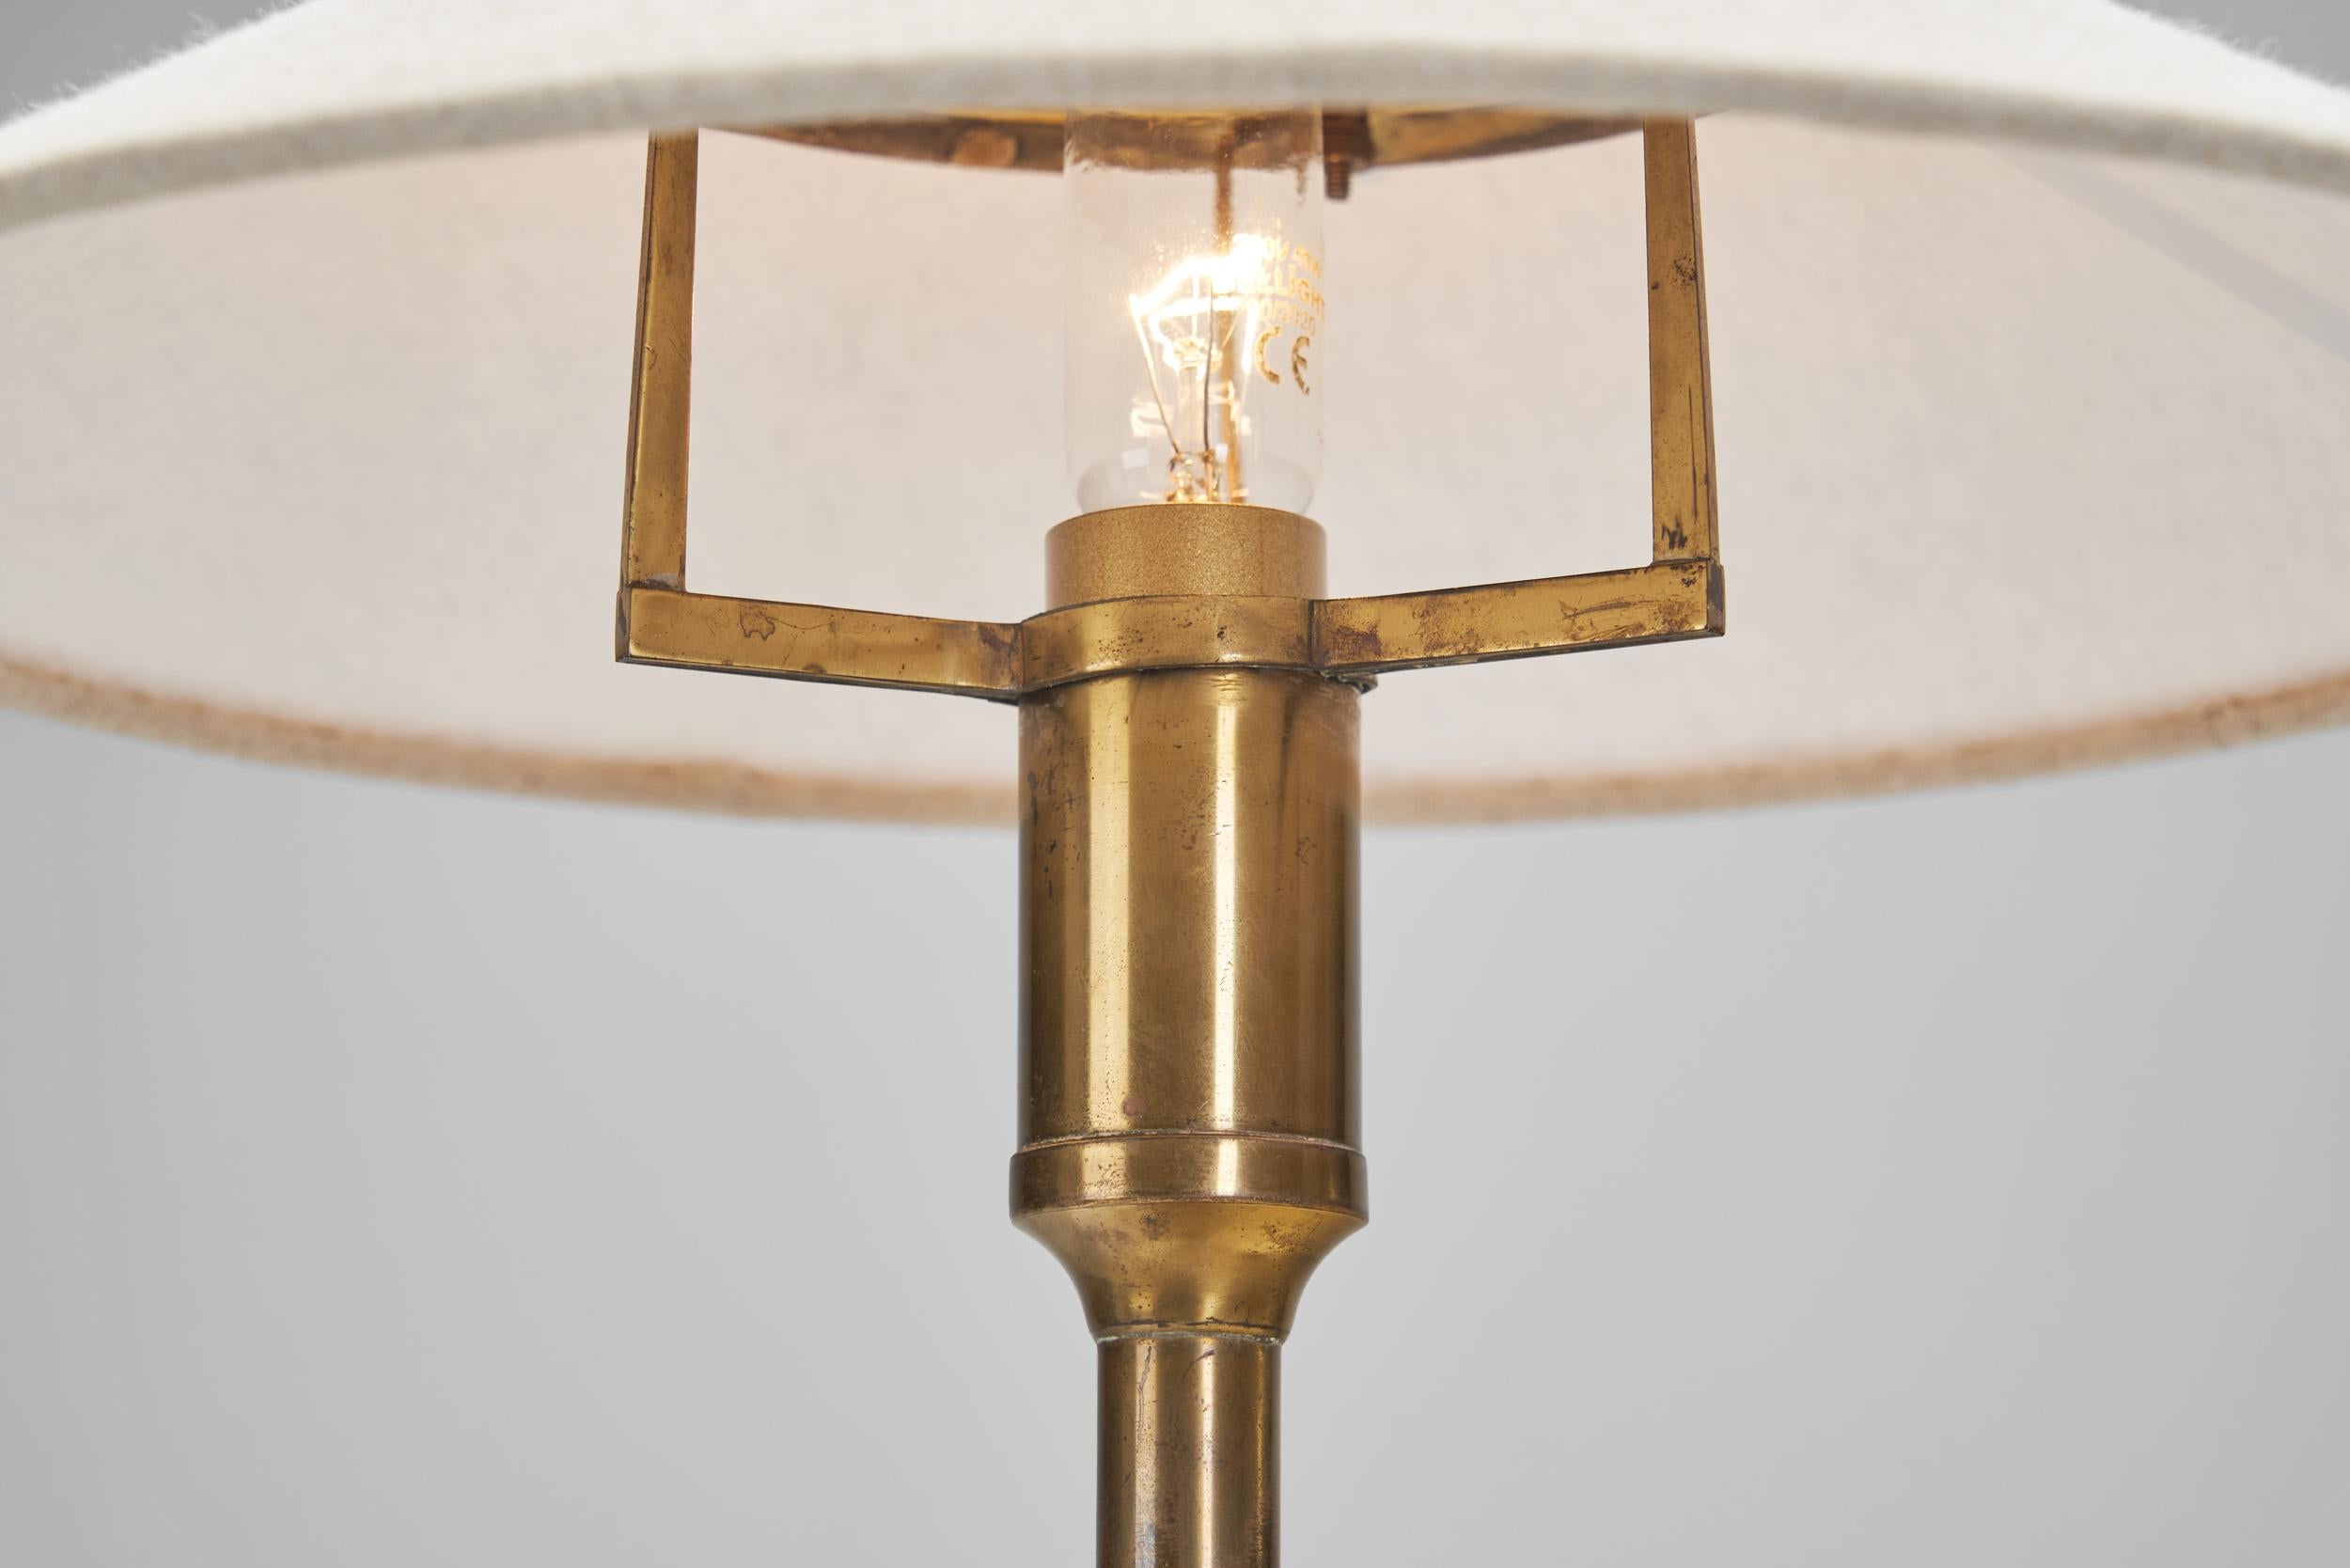 Niels Rasmussen Thykier “Kongelys T3” Table Lamp for Fog & Mörup, Denmark 1940s For Sale 8